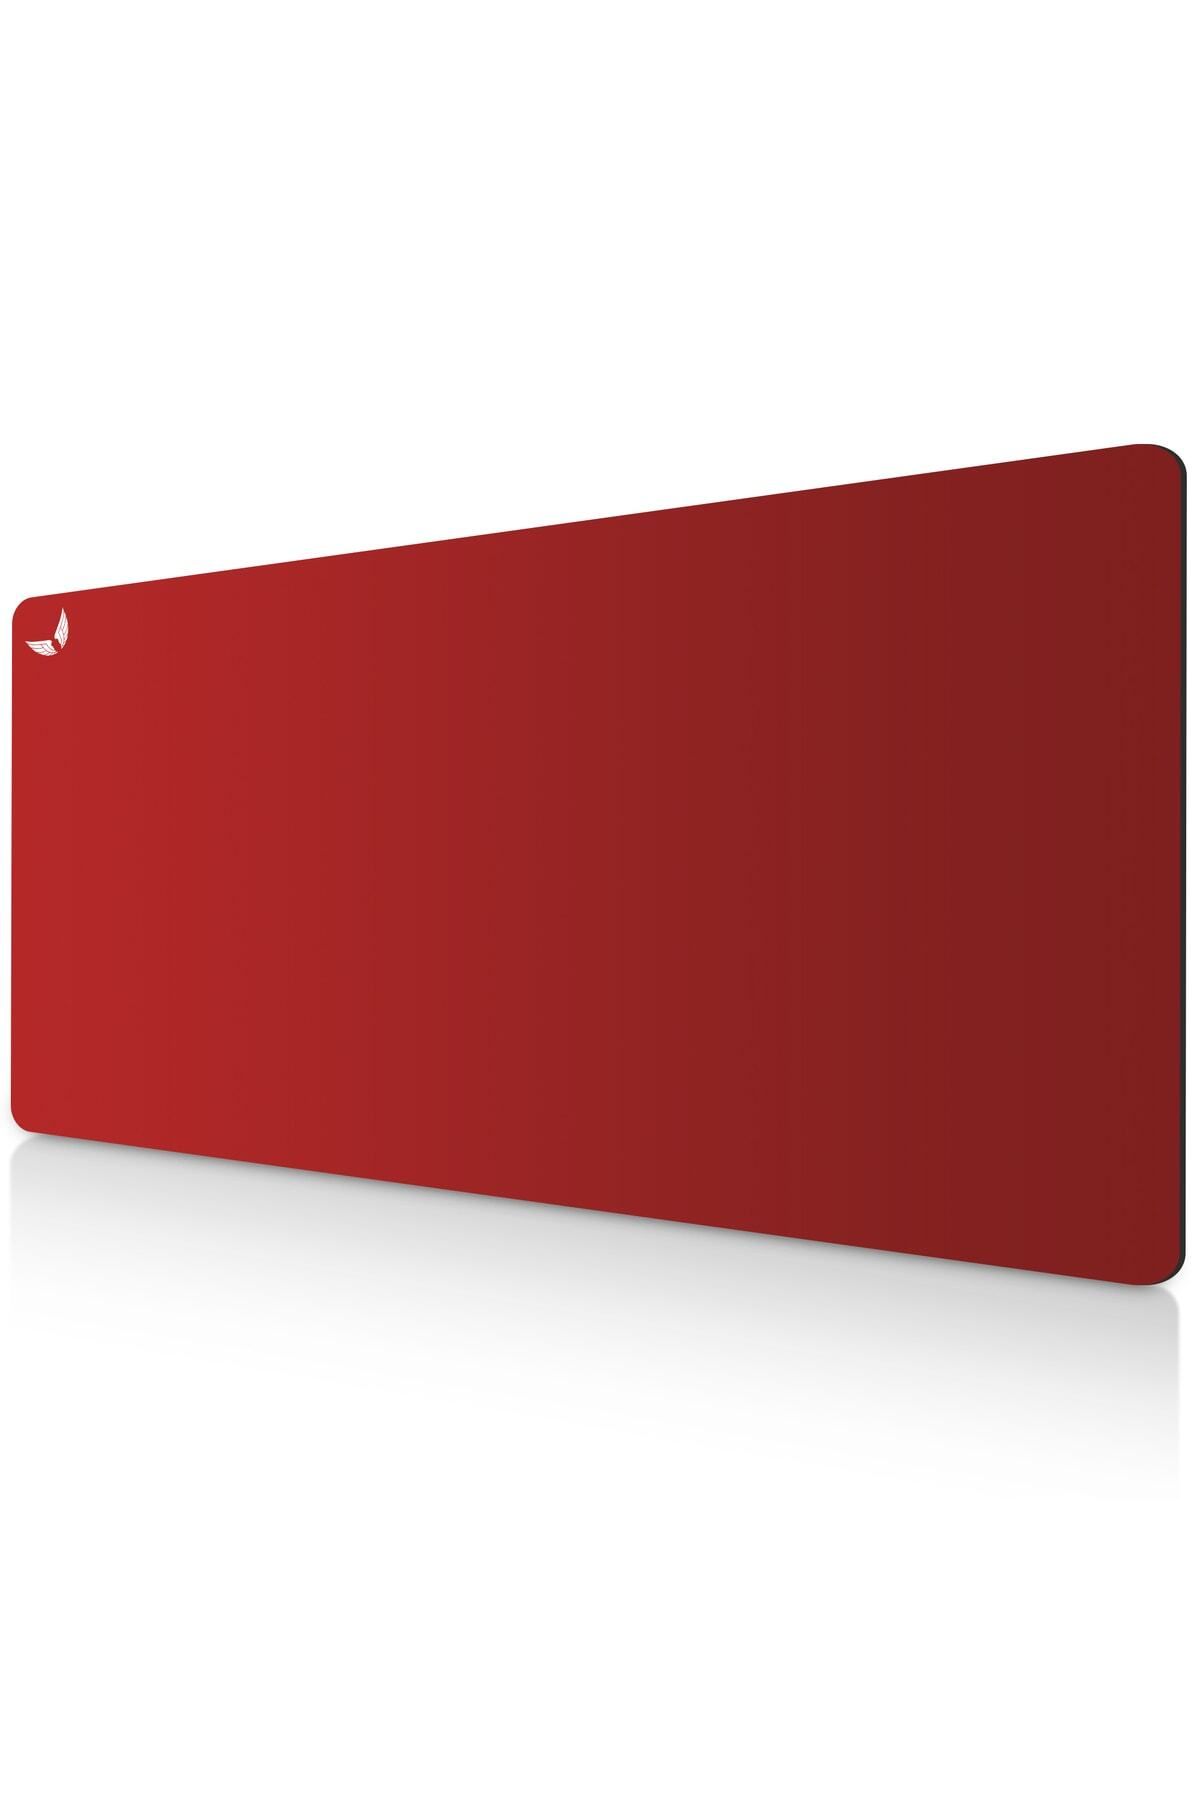 GoLite Kırmızı Gaming Mouse Pad Oyuncu Uzun Ve Büyük Boy Mousepad 70x30 Cm Klavye Fare Altlığı - Xl